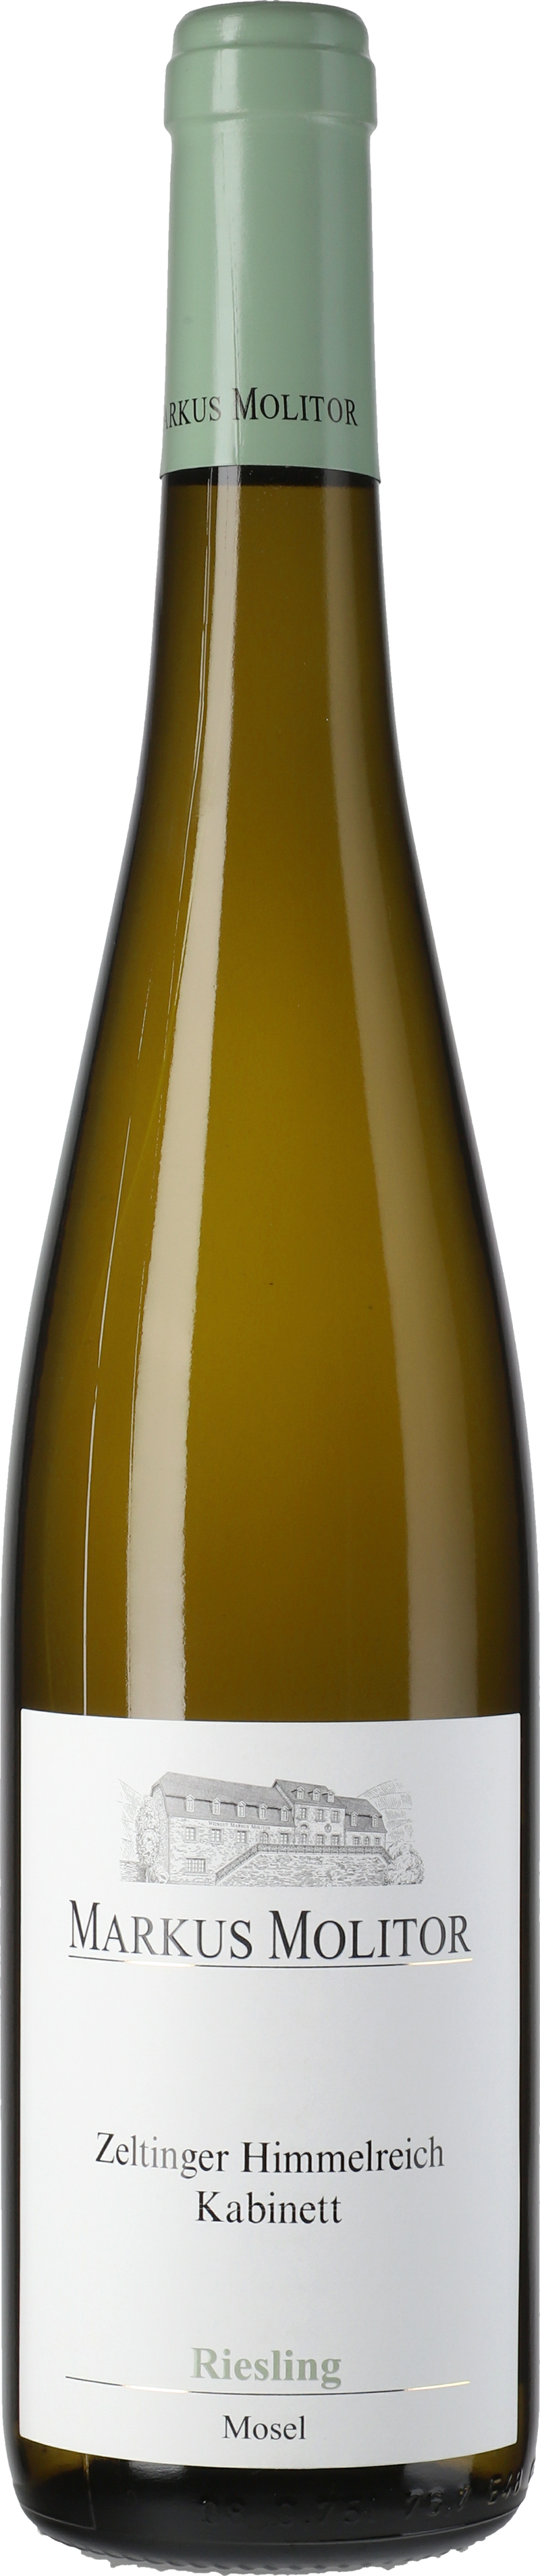 Wine - Markus Molitor Zeltinger Himmelreich Kabinett (Green Capsule) 2018 - LPB Market